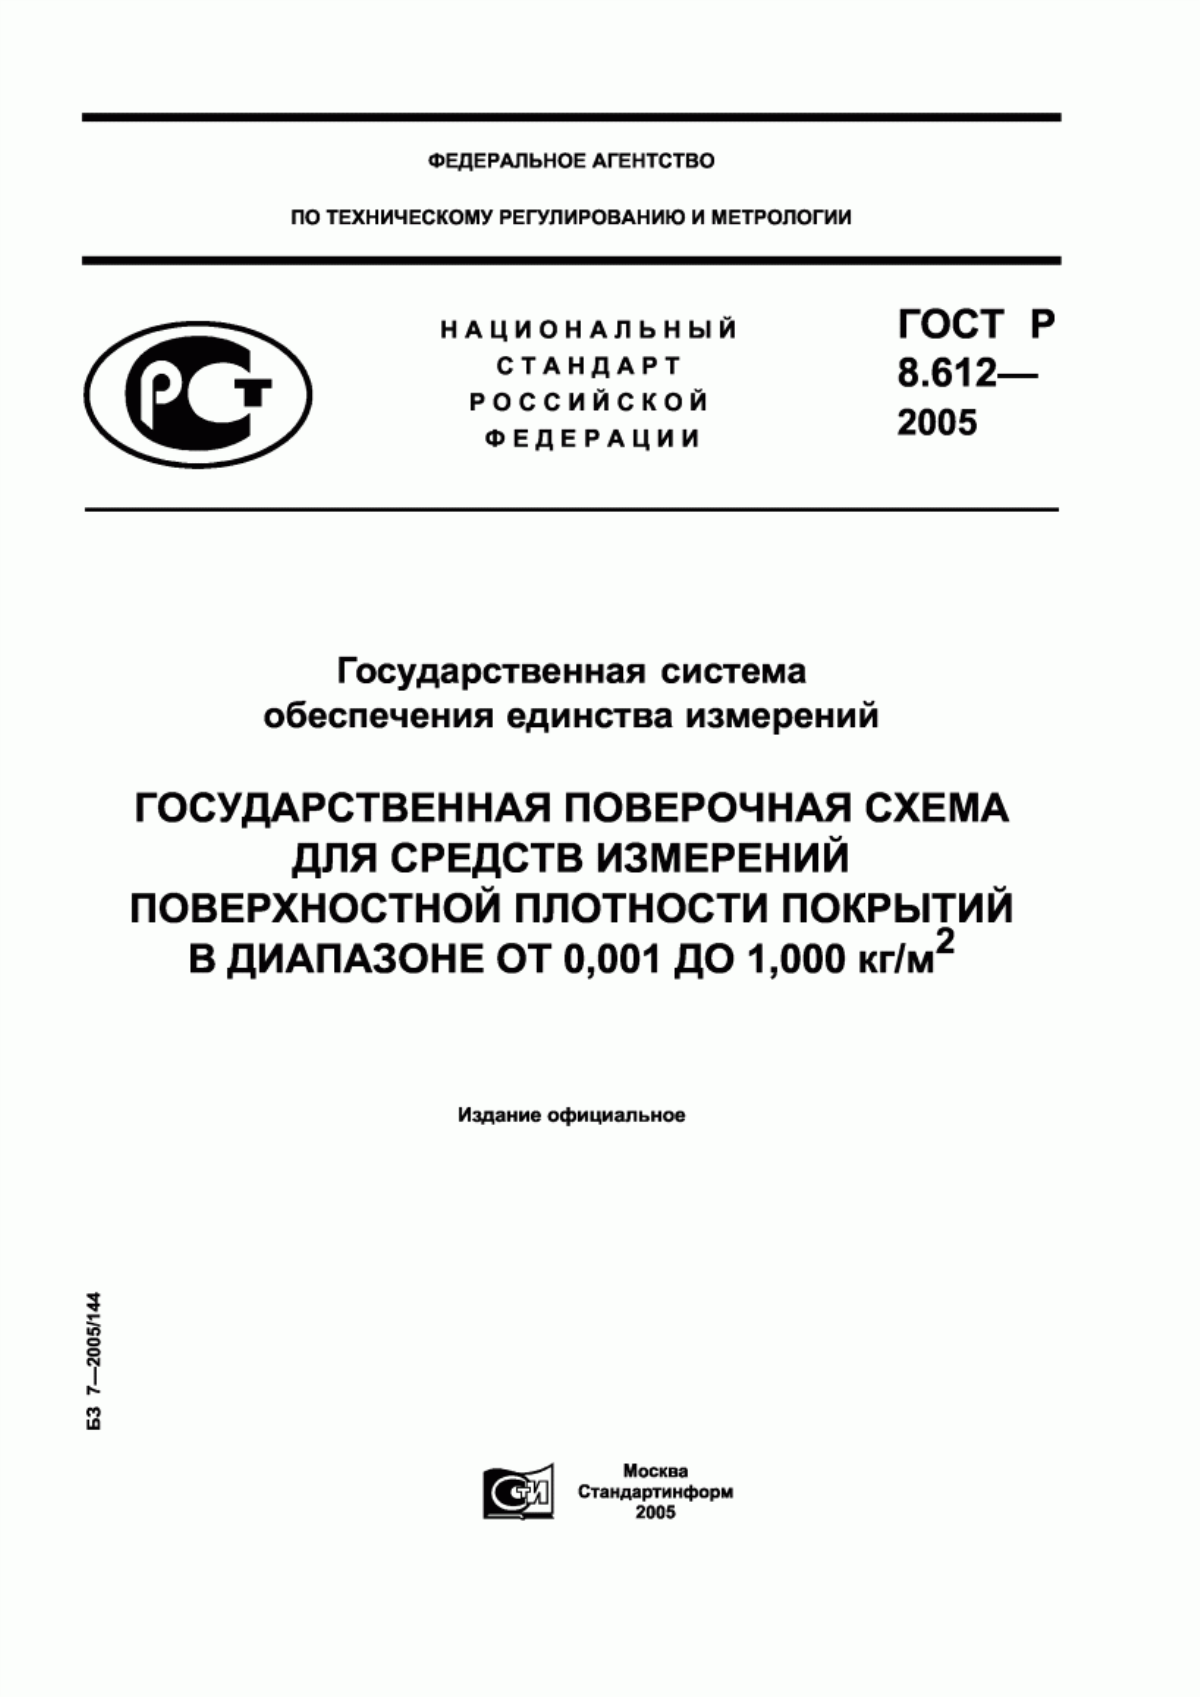 ГОСТ Р 8.612-2005 Государственная система обеспечения единства измерений. Государственная поверочная схема для средств измерений поверхностной плотности покрытий в диапазоне от 0,001 до 1,000 кг/м кв.